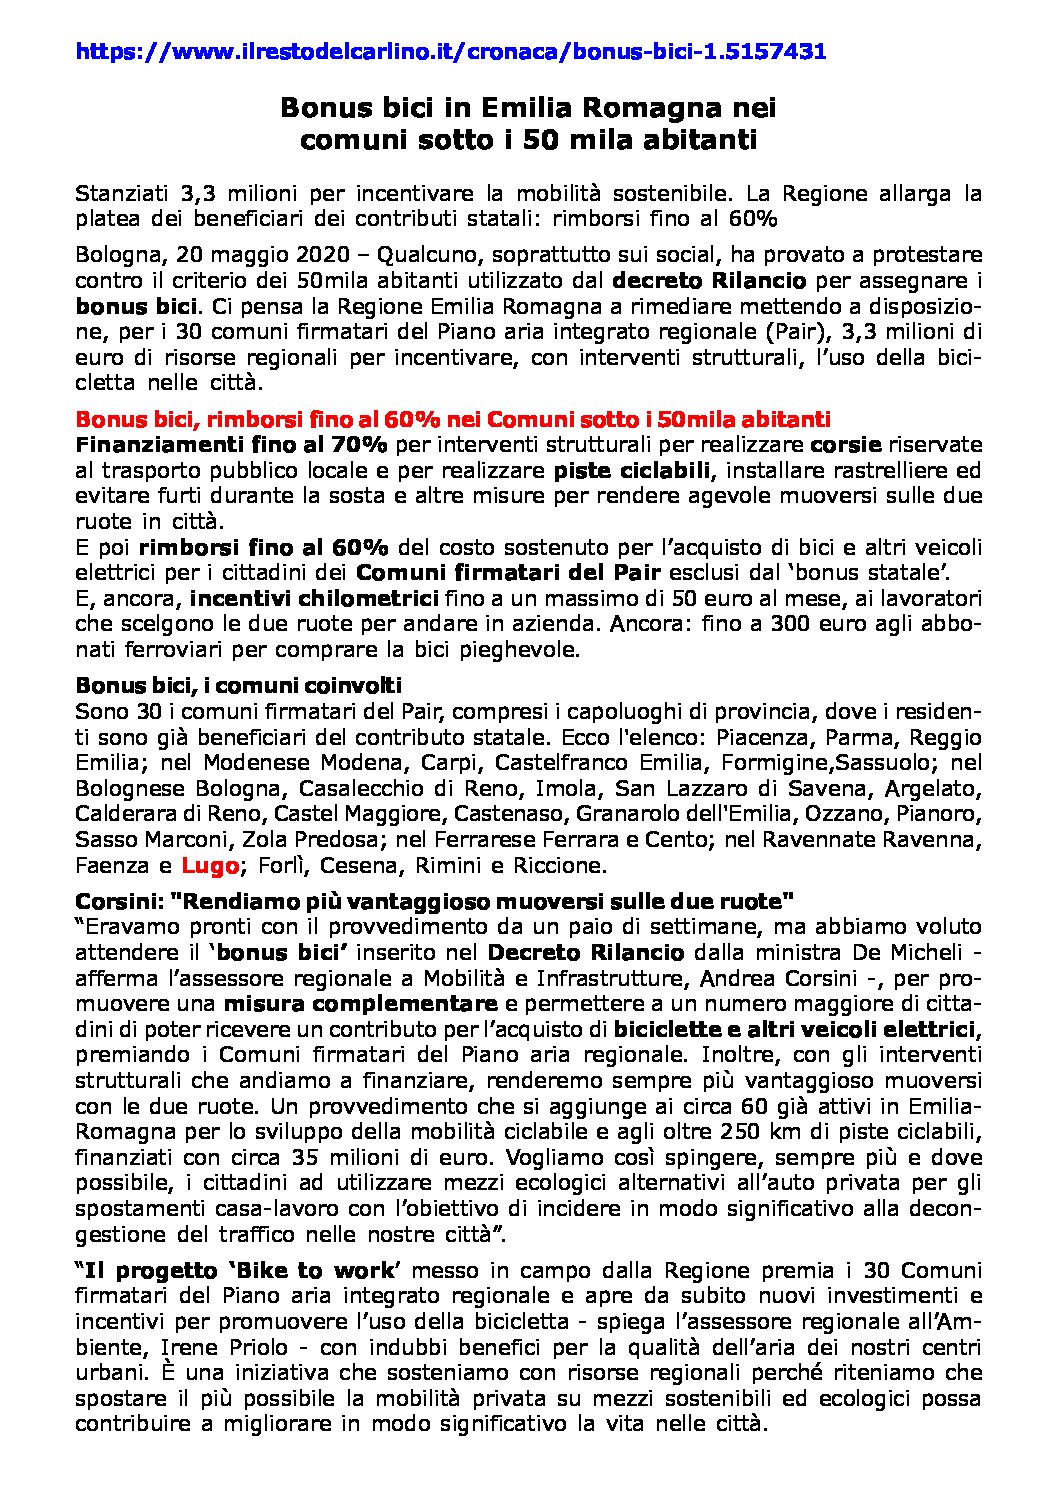 Bonus bici in Emilia Romagna pdf